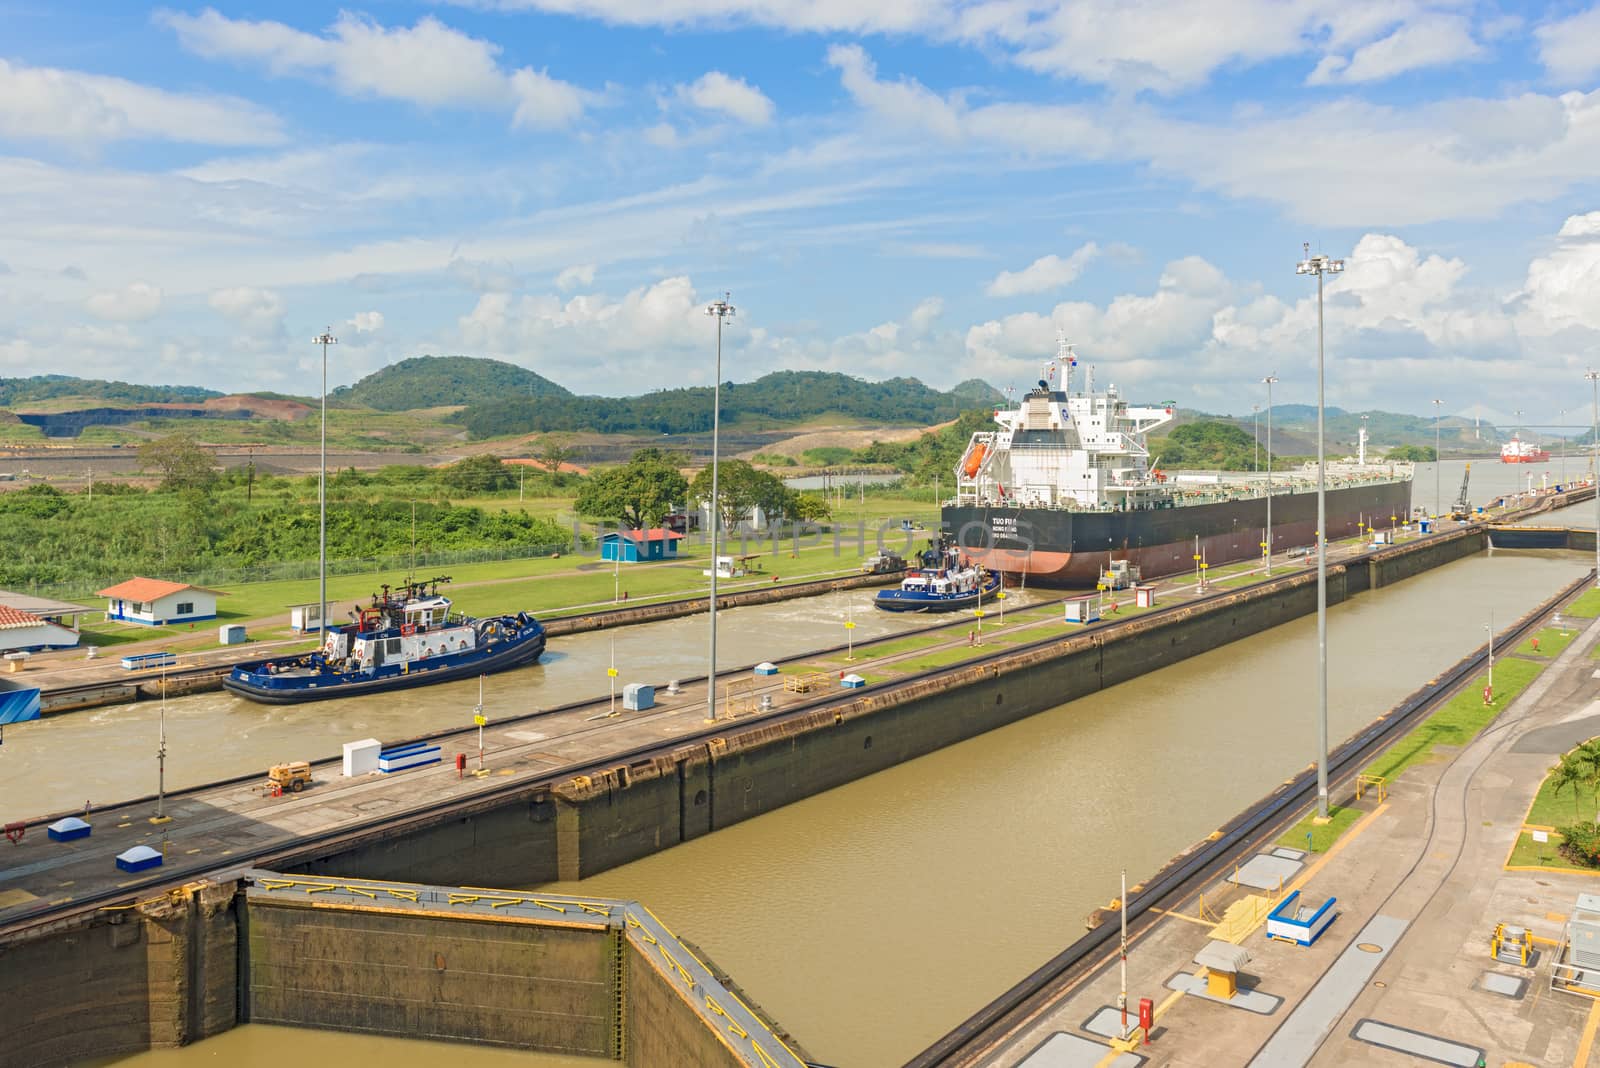 Panama City, Panama - January 2, 2014: Panama Canal, Miraflores locks on a sunny day in January 2014.